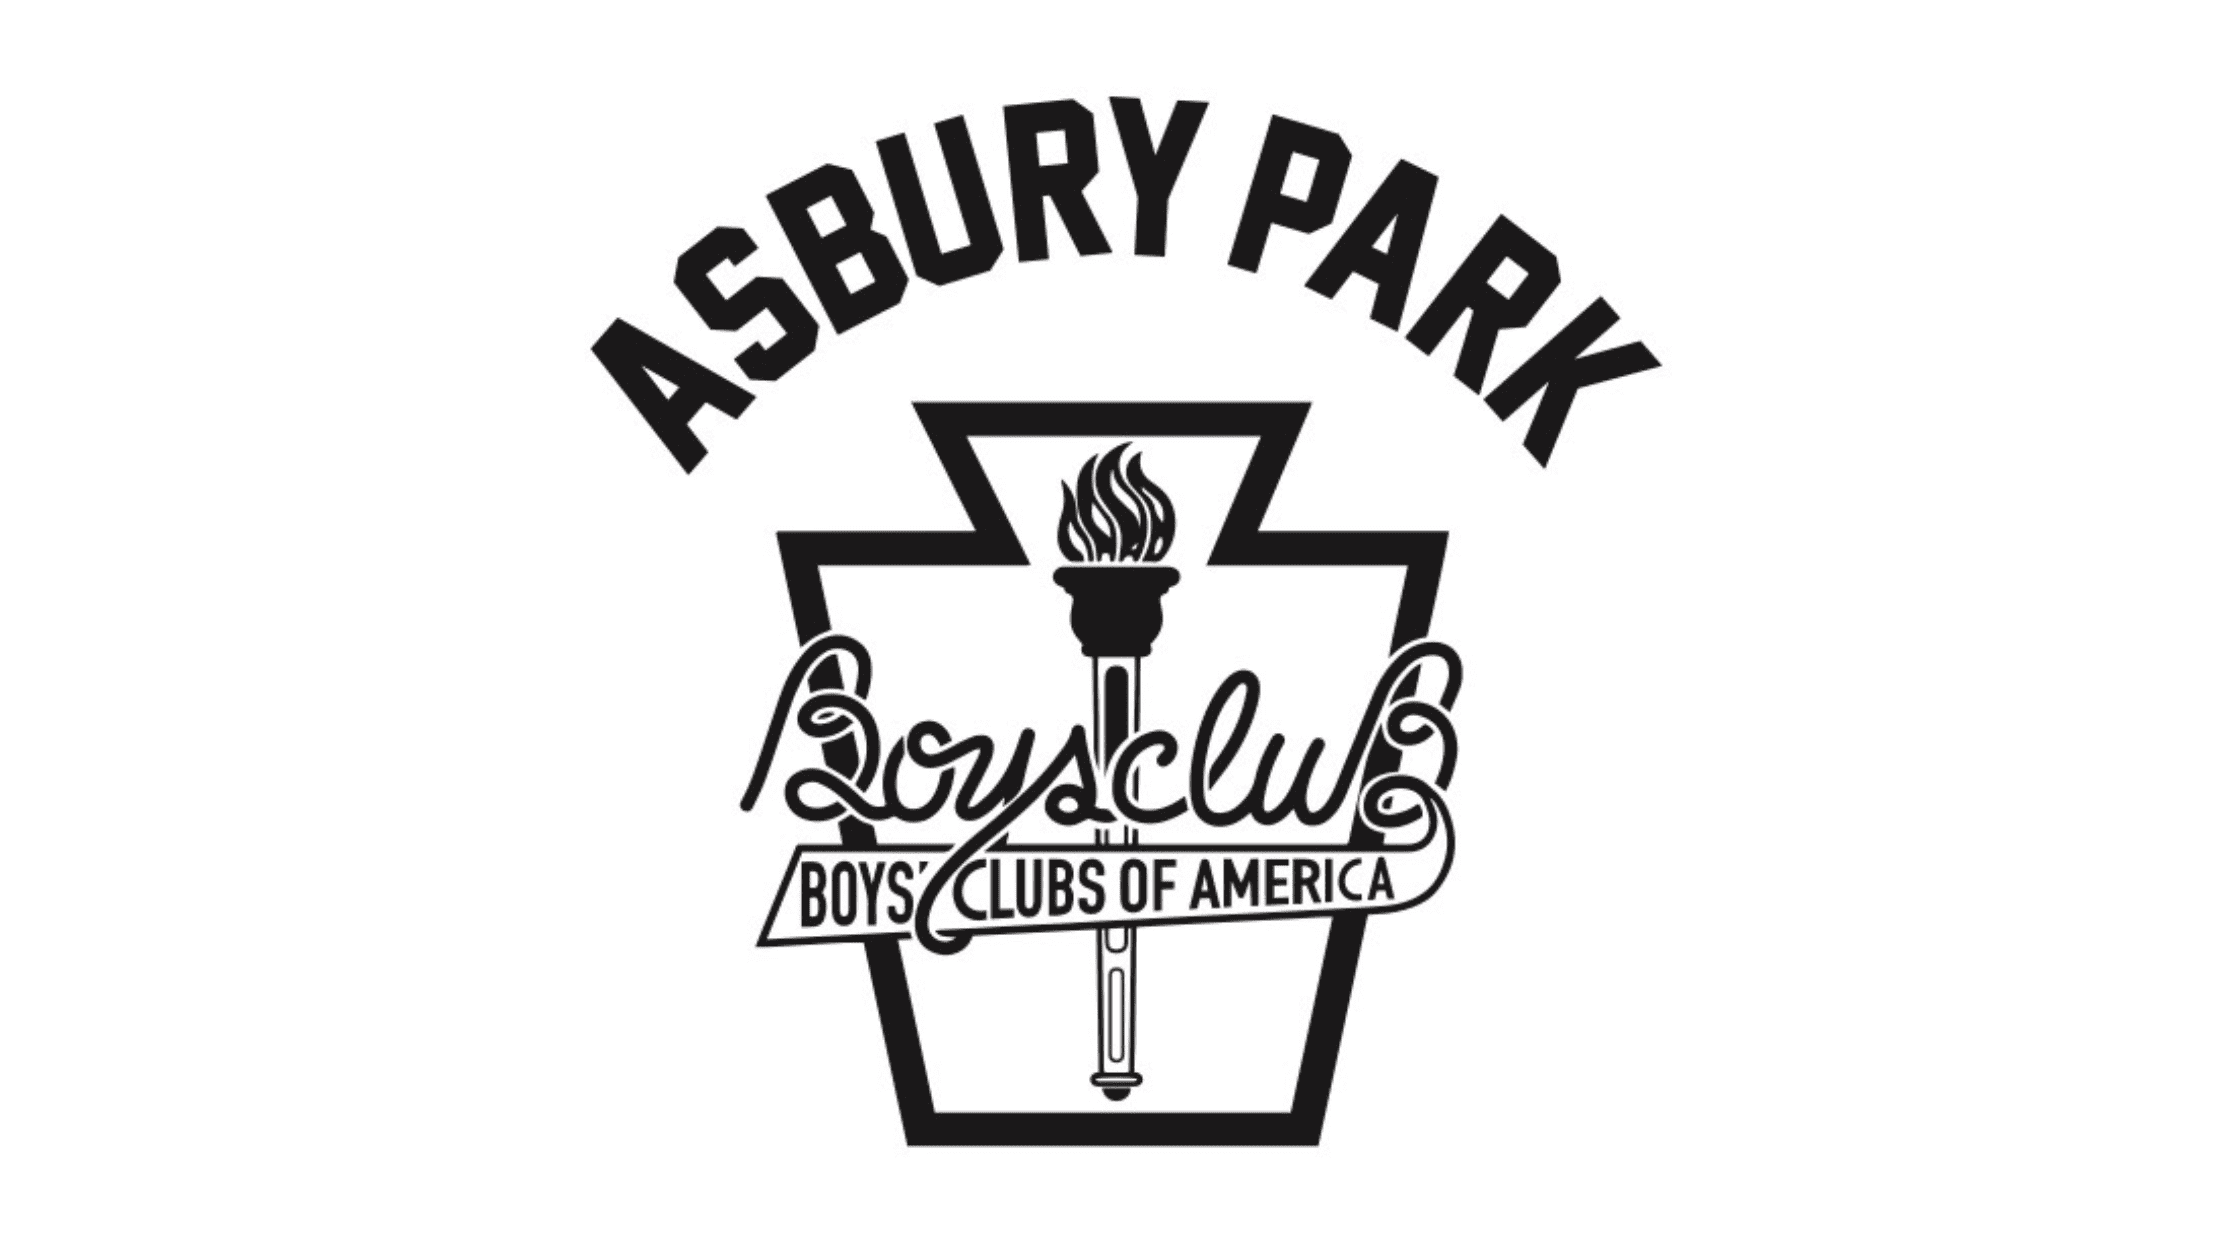 Original Logo of the Asbury Park Boys Club